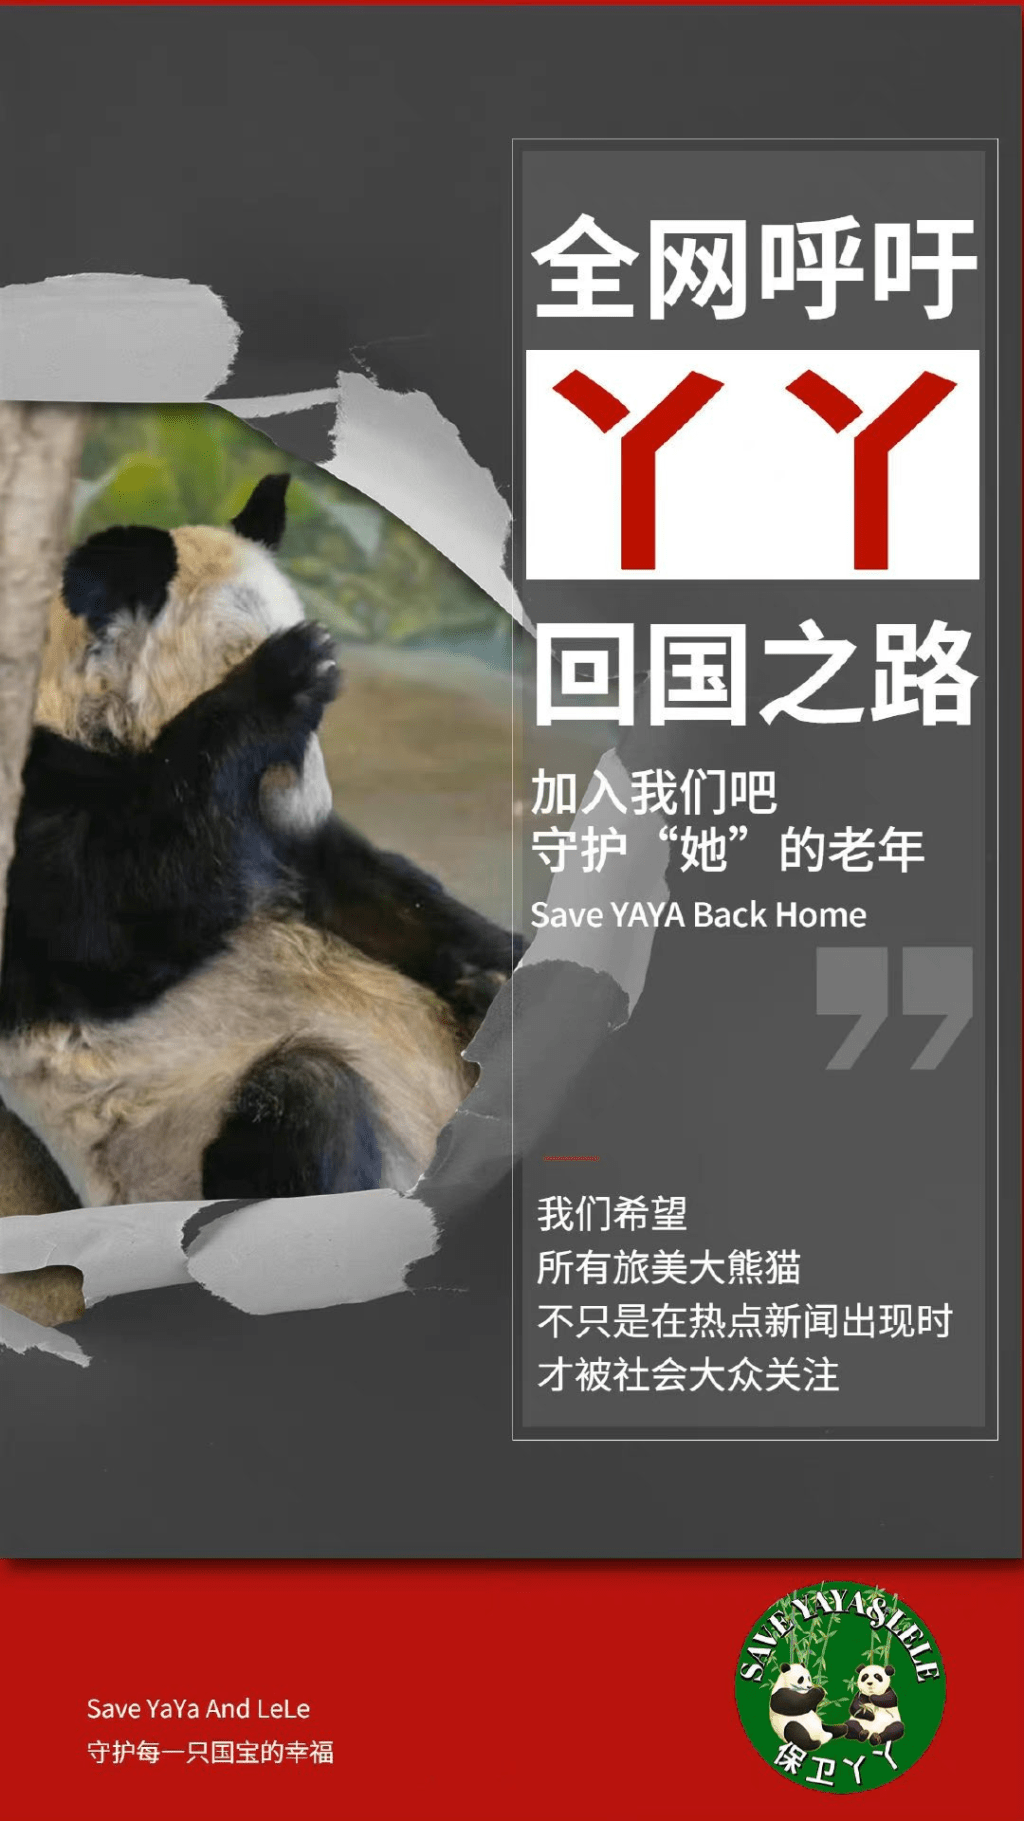 有網民發起呼籲盡早接大熊貓丫丫回國的活動。